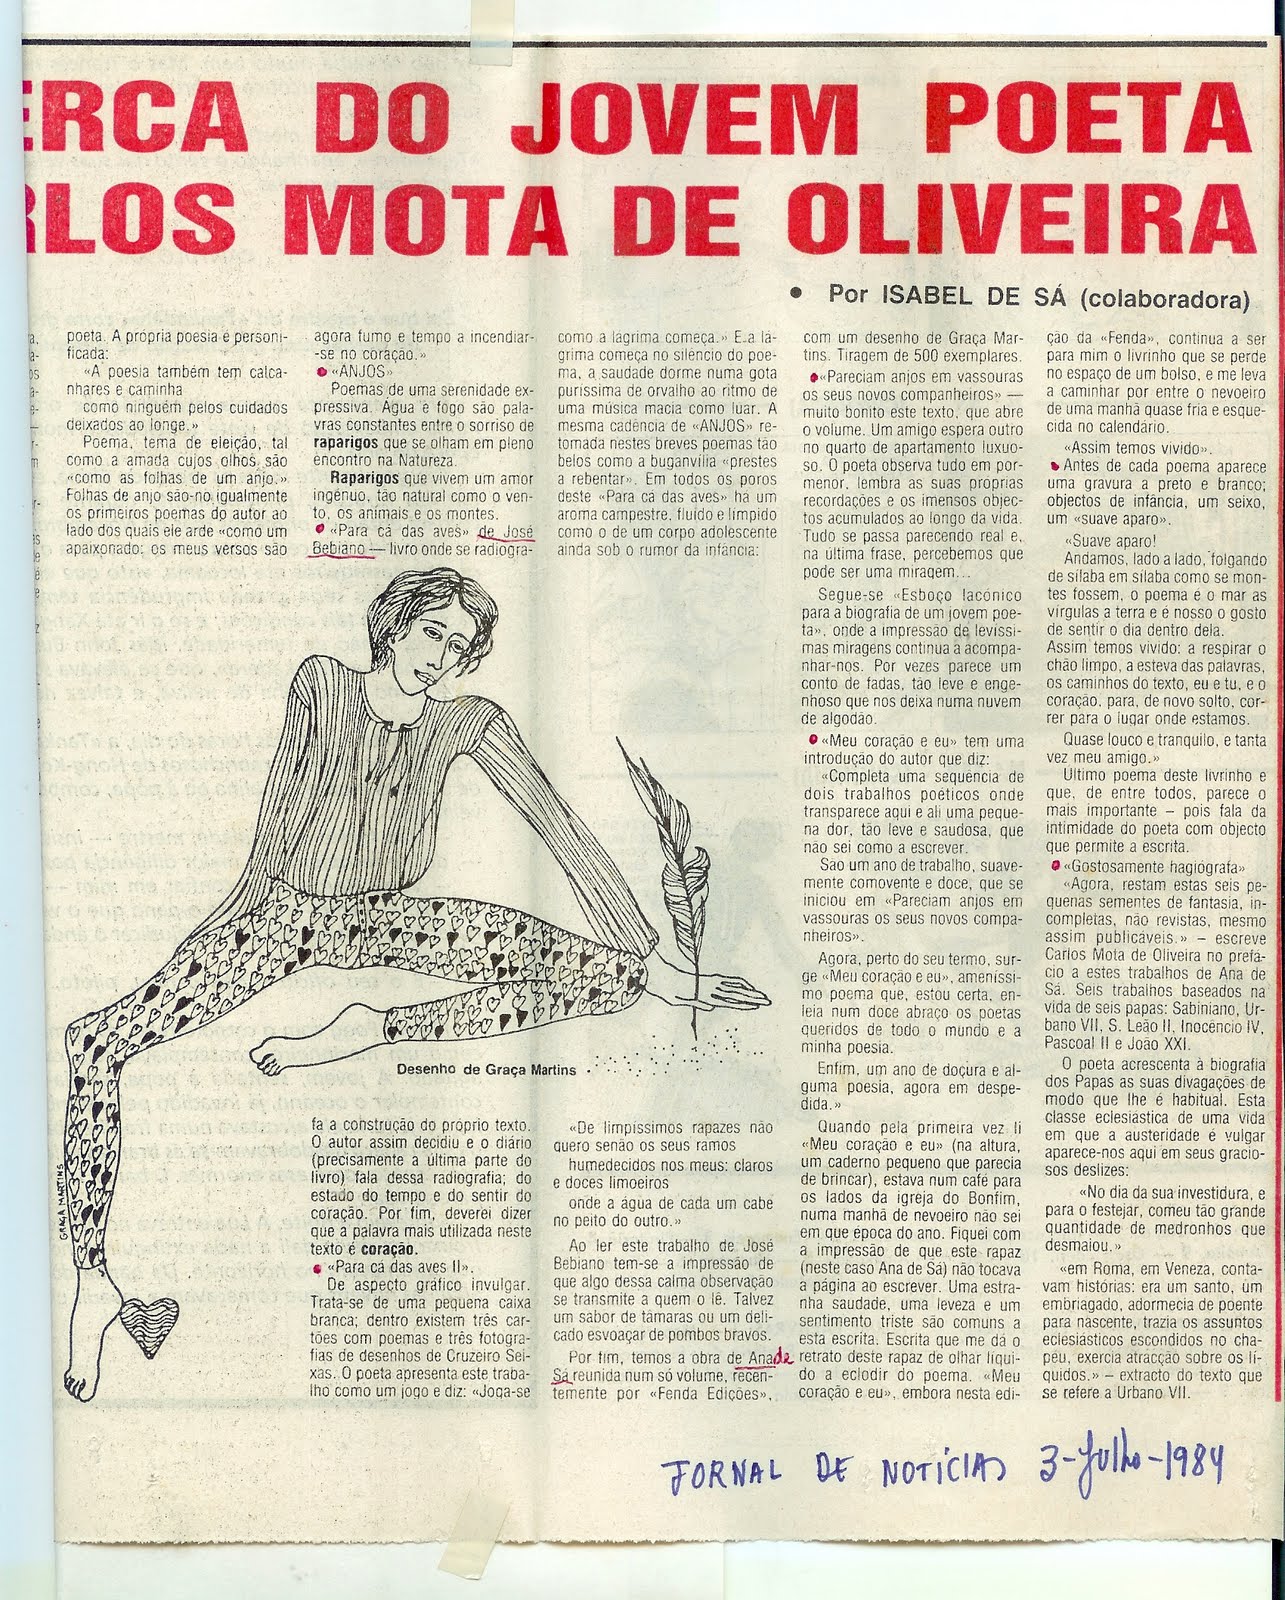 Carlos Mota de Oliveira